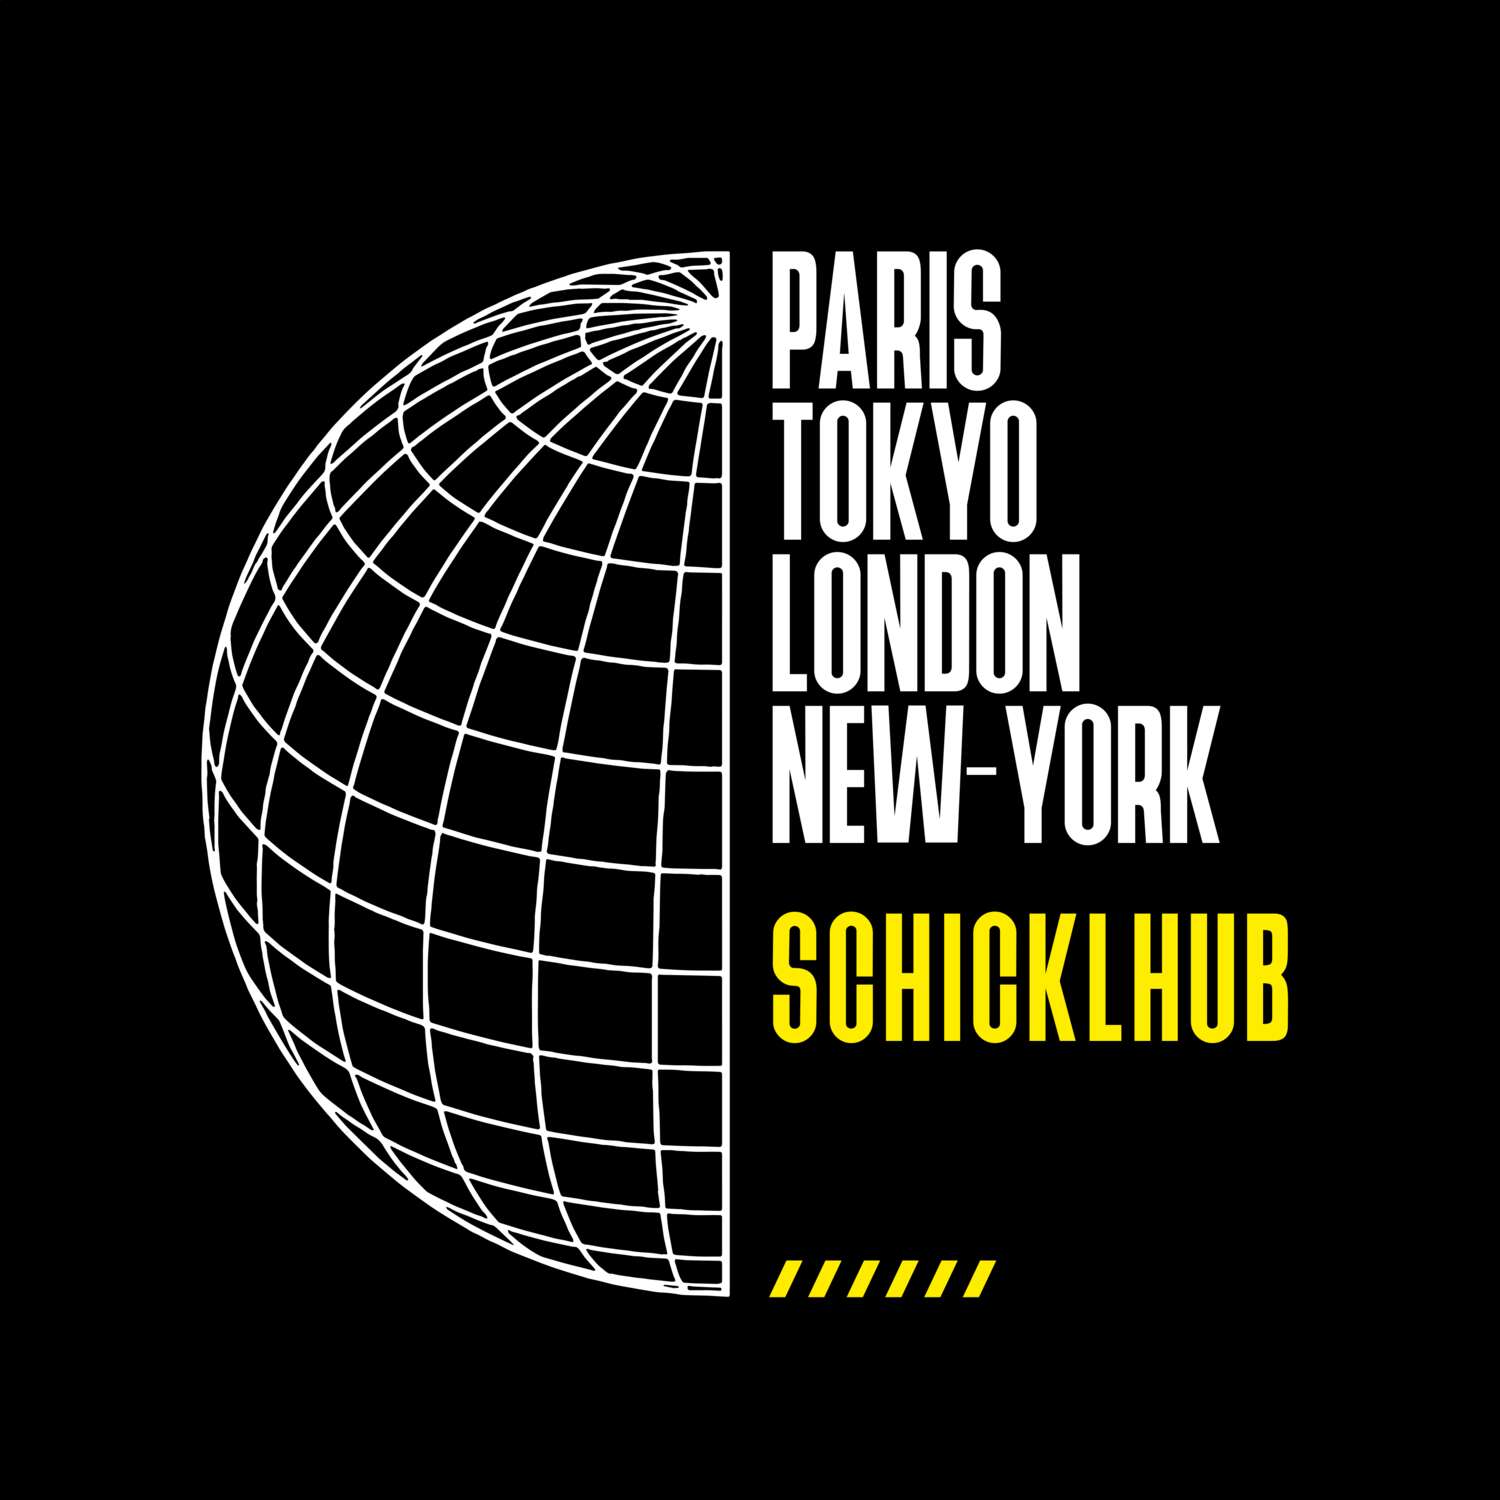 Schicklhub T-Shirt »Paris Tokyo London«